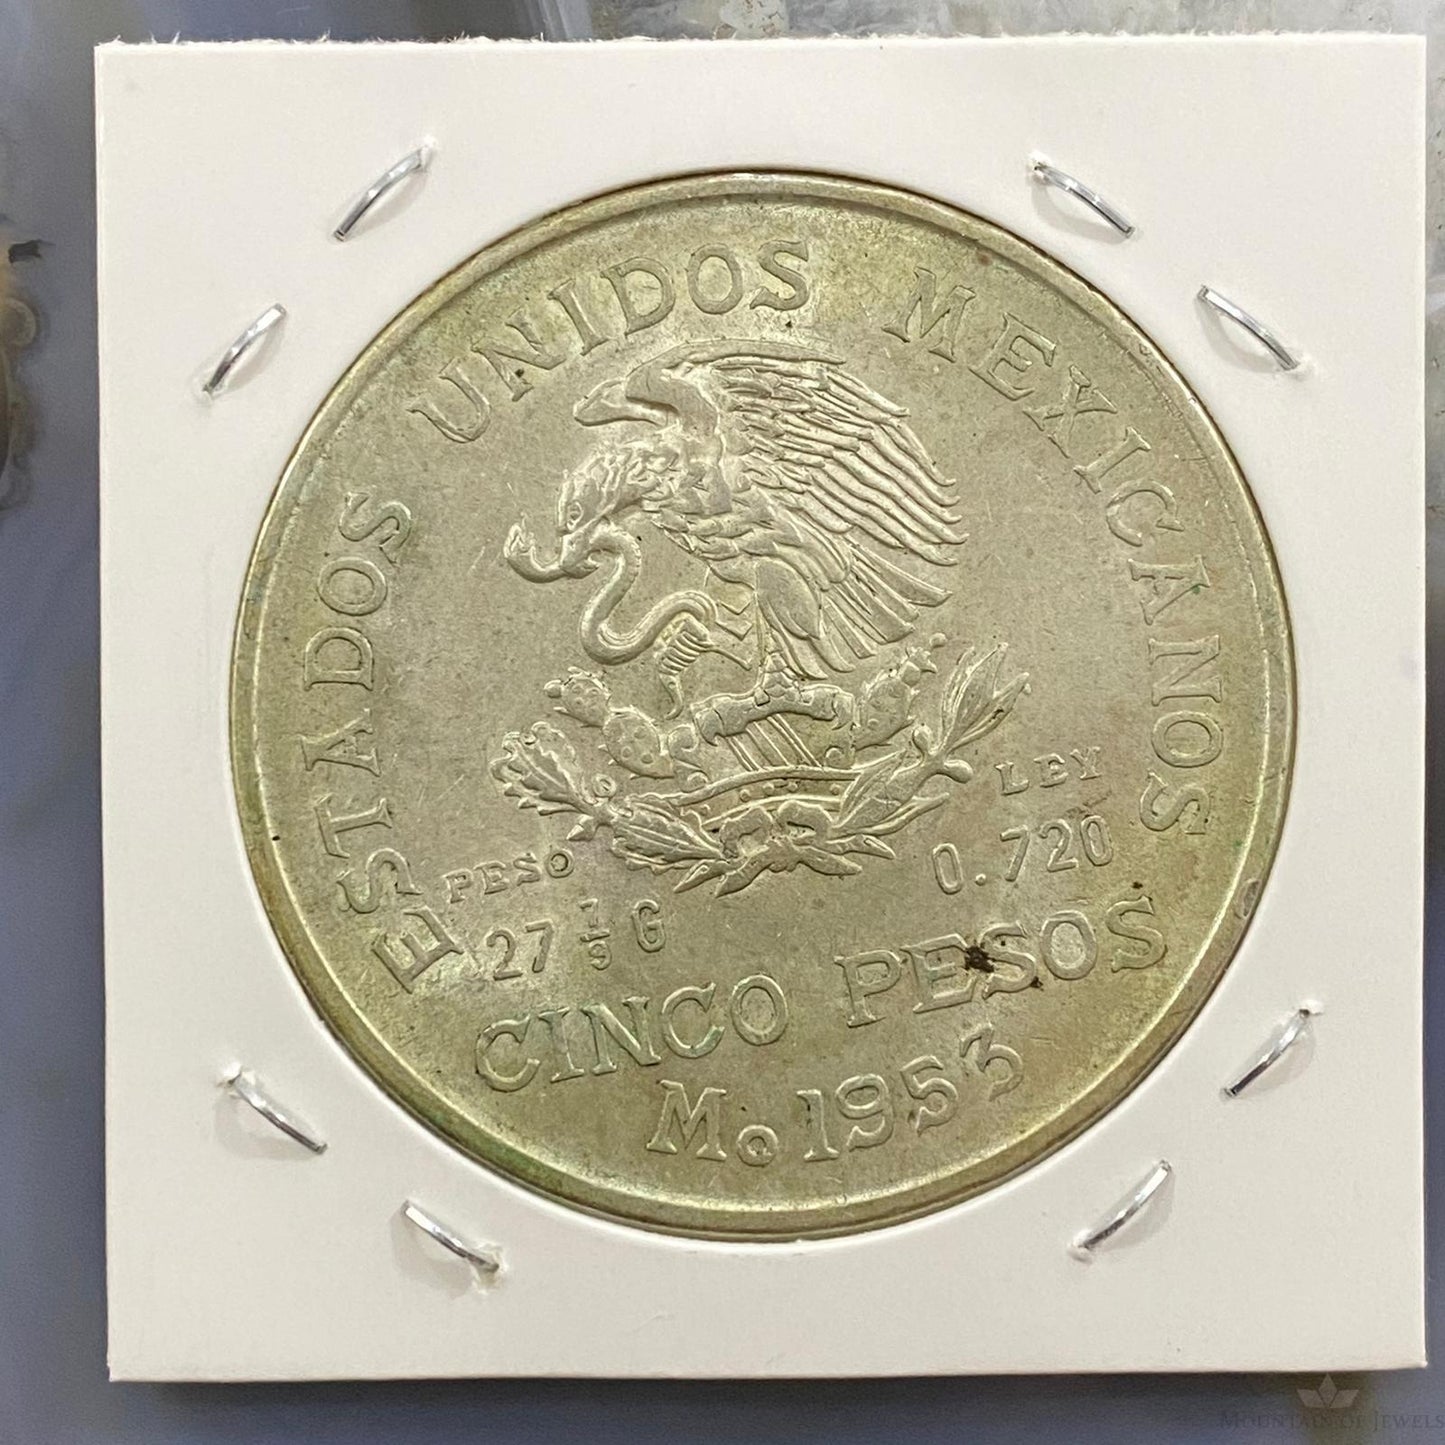 1953 Mexico 5 Pesos .720 Silver Coin #52023-3U